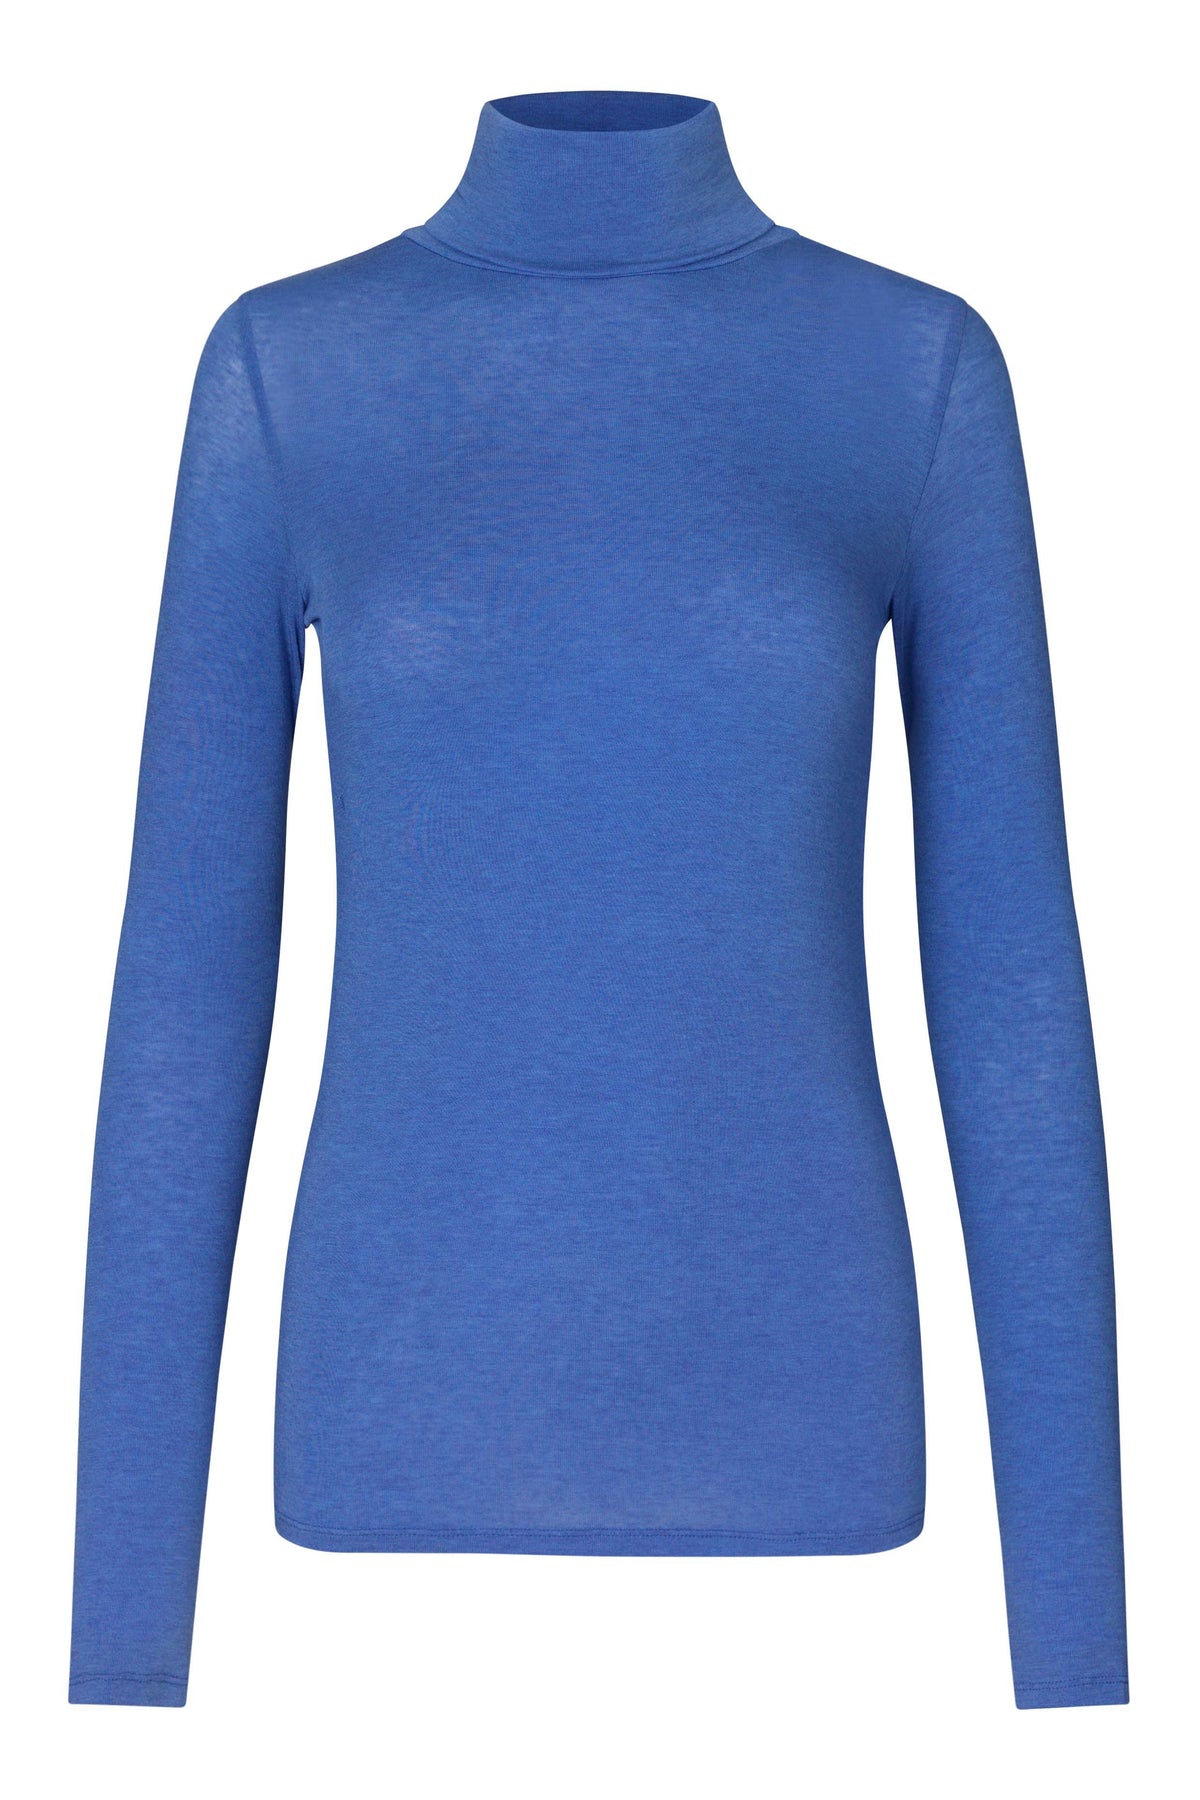 Long sleeved blue turtleneck top